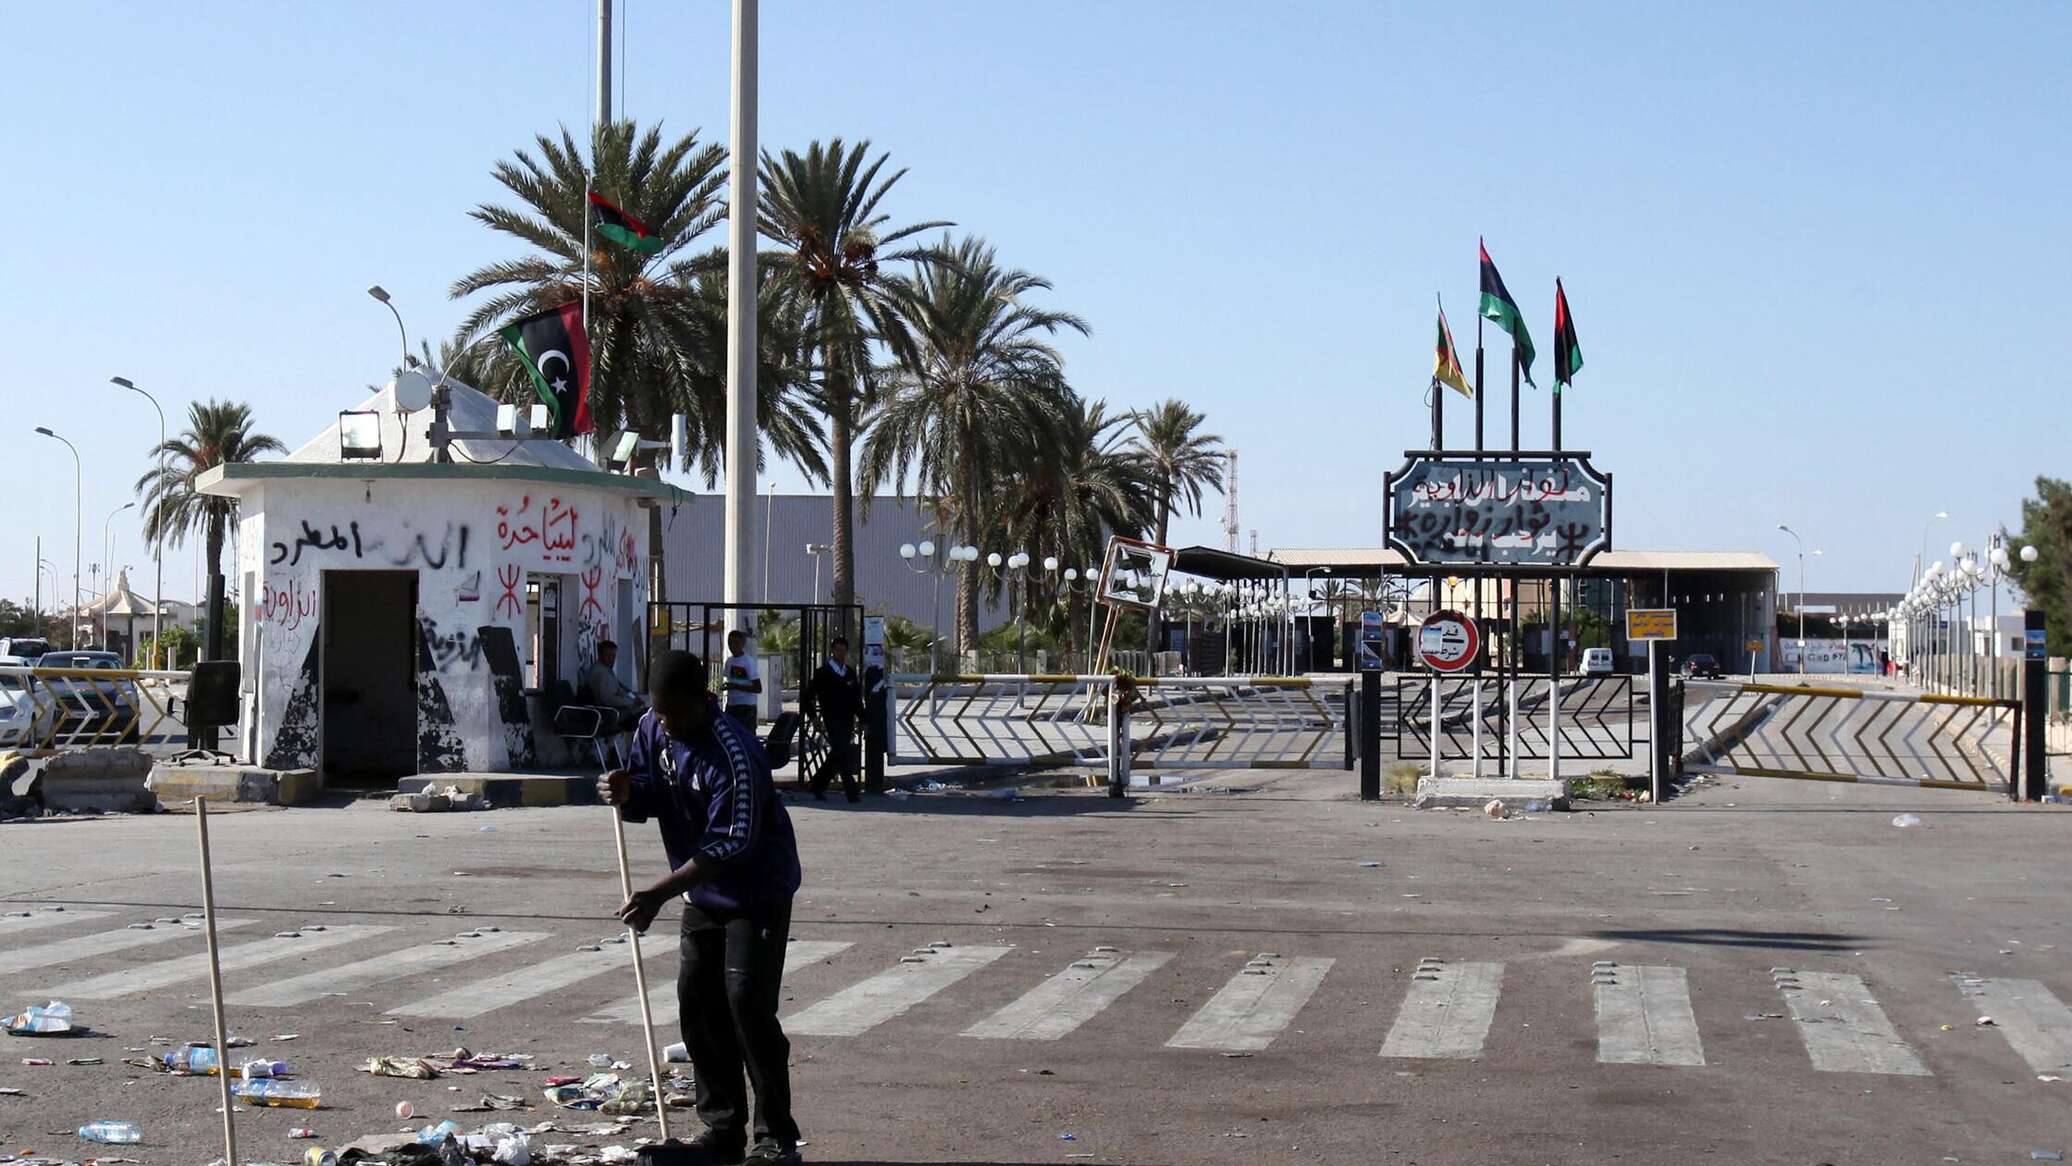 المتحدث السابق باسم "الرئاسي الليبي": الوضع عند معبر "رأس جدير" قابل للاشتعال مجددا